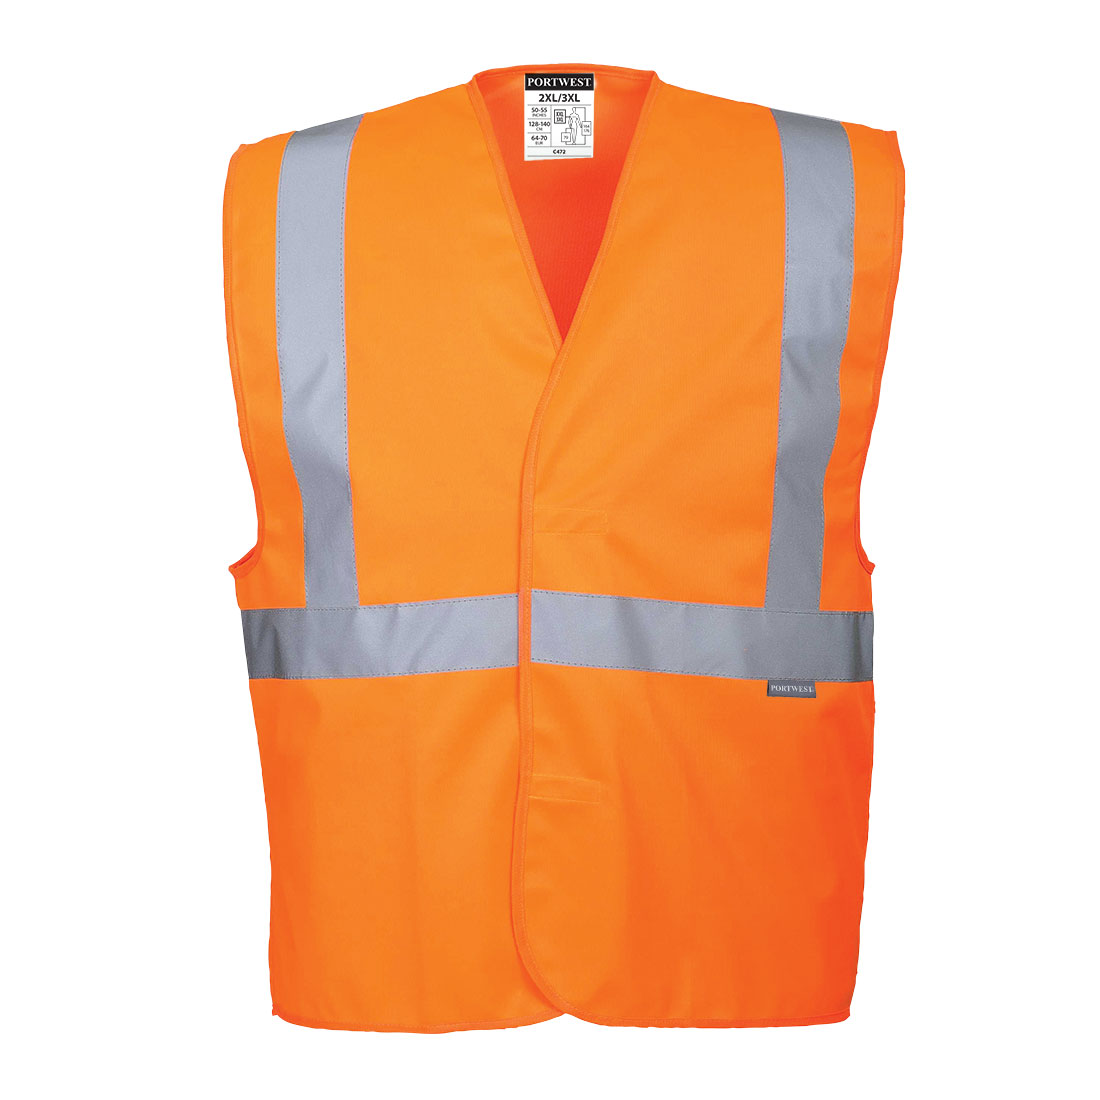 Reflexní vesta s jedním pruhem Barva: oranžová, Velikost: S/M